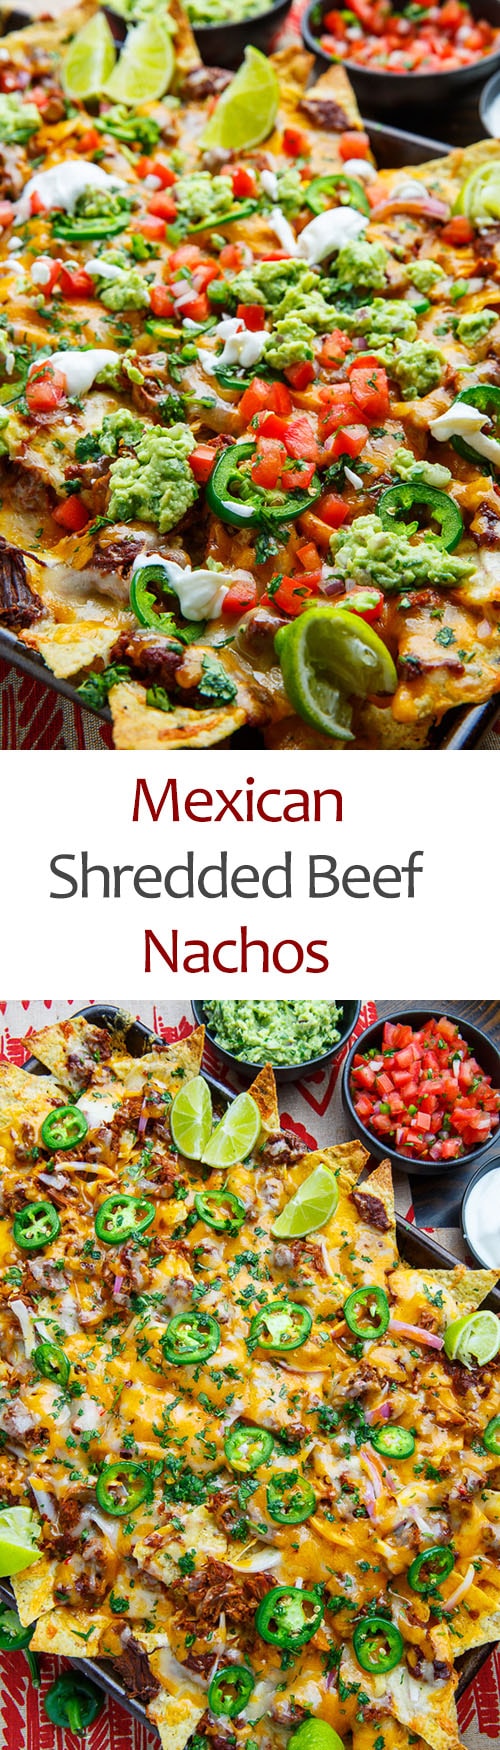 Mexican Shredded Beef Nachos